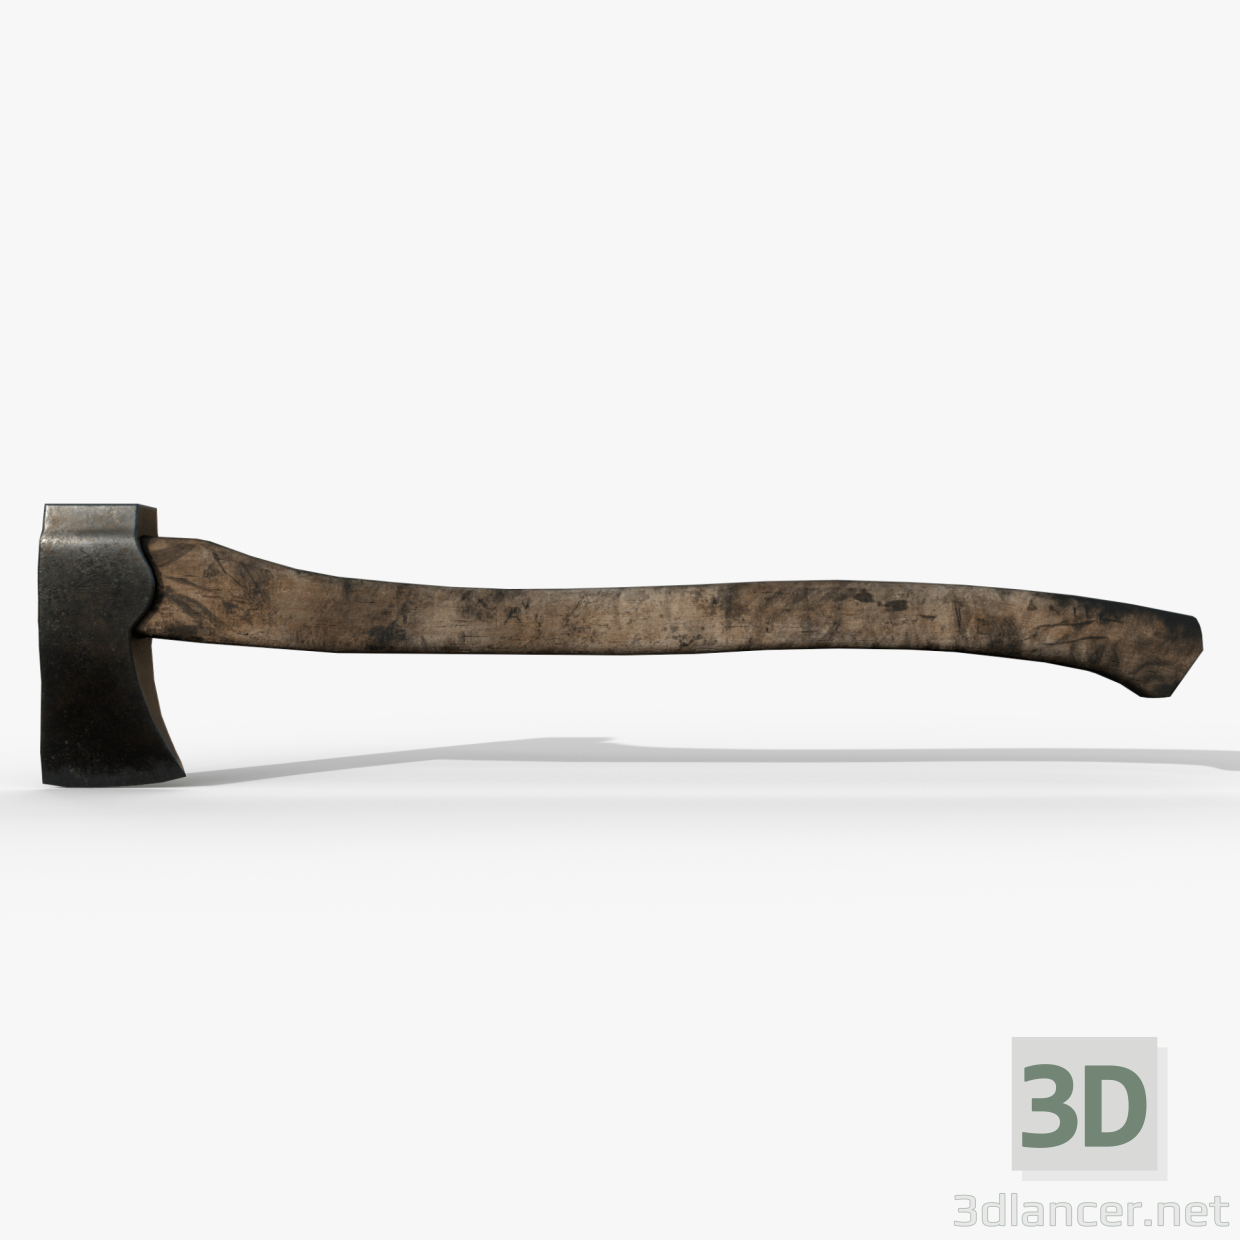 3d Old axe model buy - render